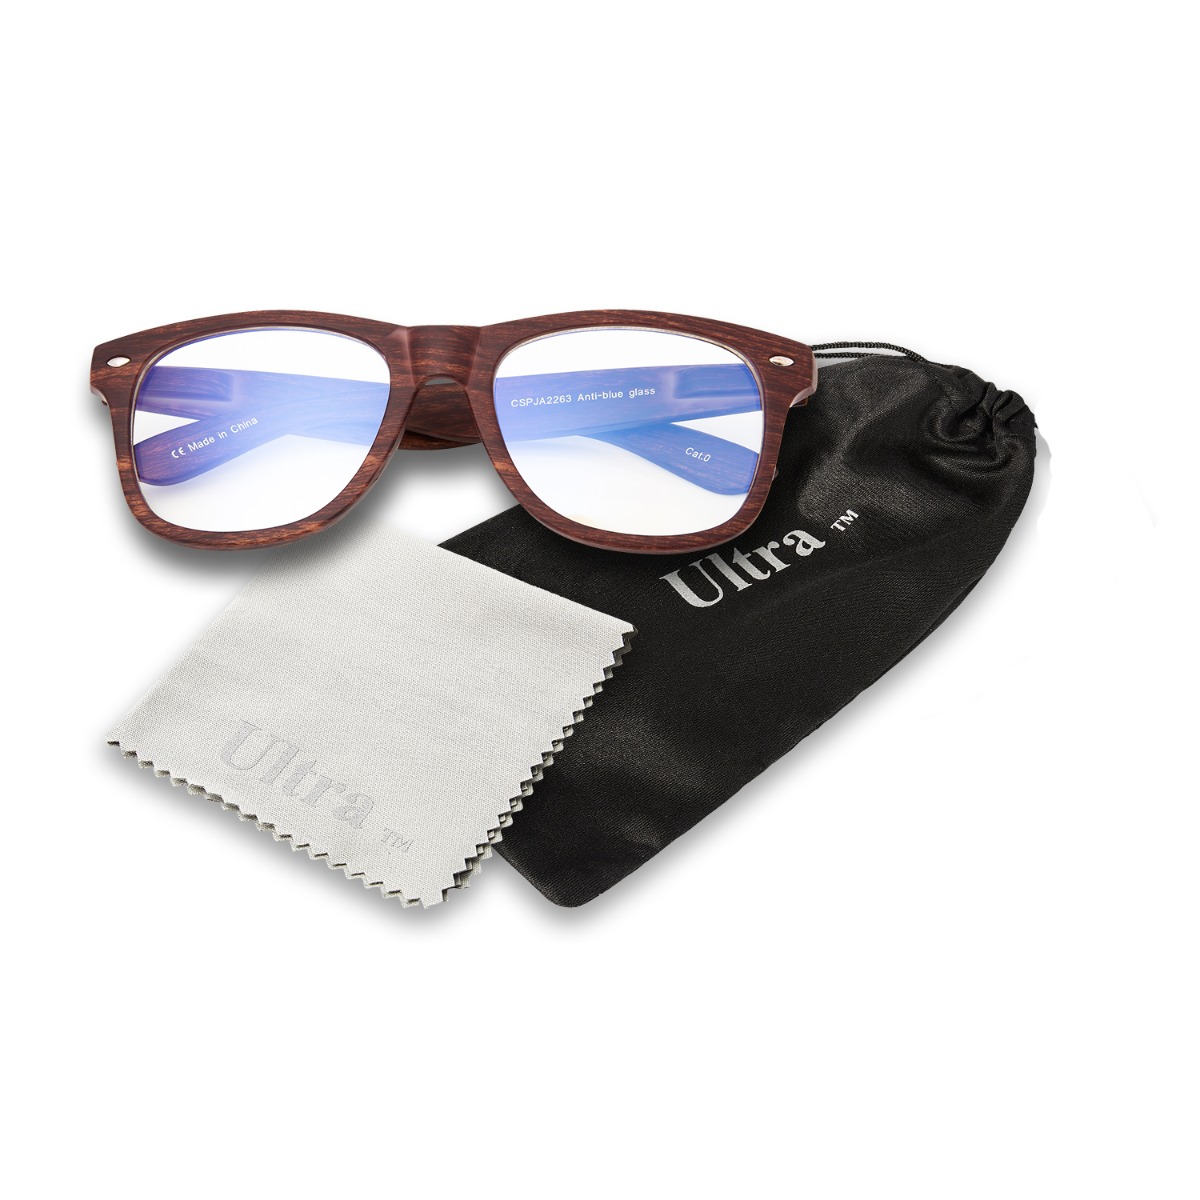 EDTO Sunglasses for Women Polarized UV Protection Blue Light Blocking Glasses Men Women Vintage Round Rim Frame Eyeglasses 